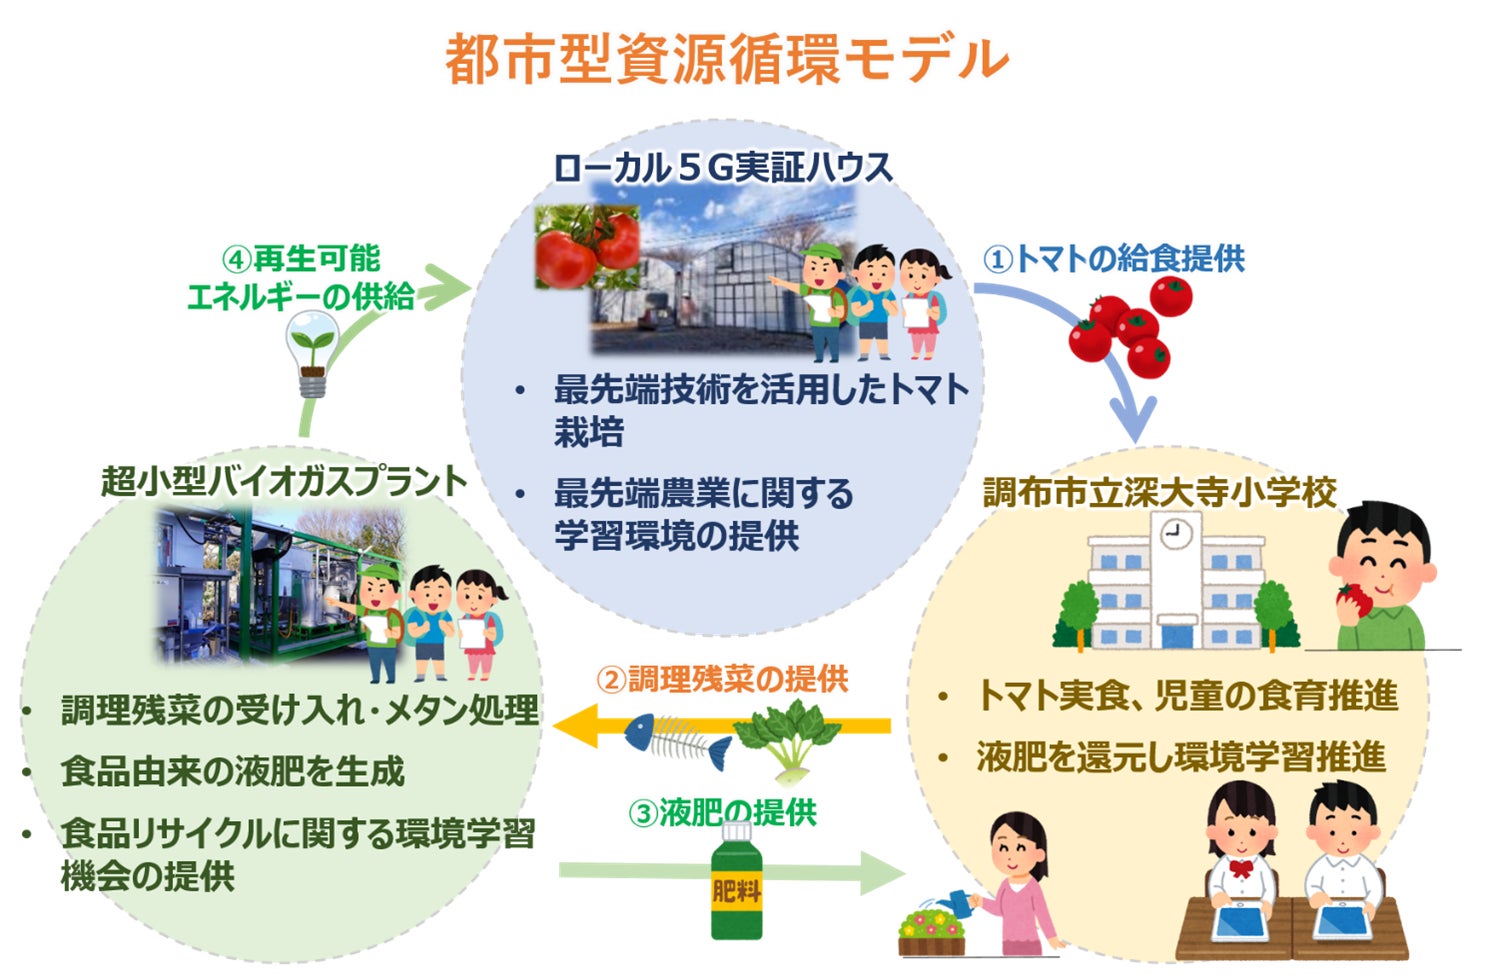 調布市、NTT東日本、ビオストック、NTTアグリテクノロジーの連携による学校給食調理残菜再資源化と環境学習の取り組みのサブ画像1